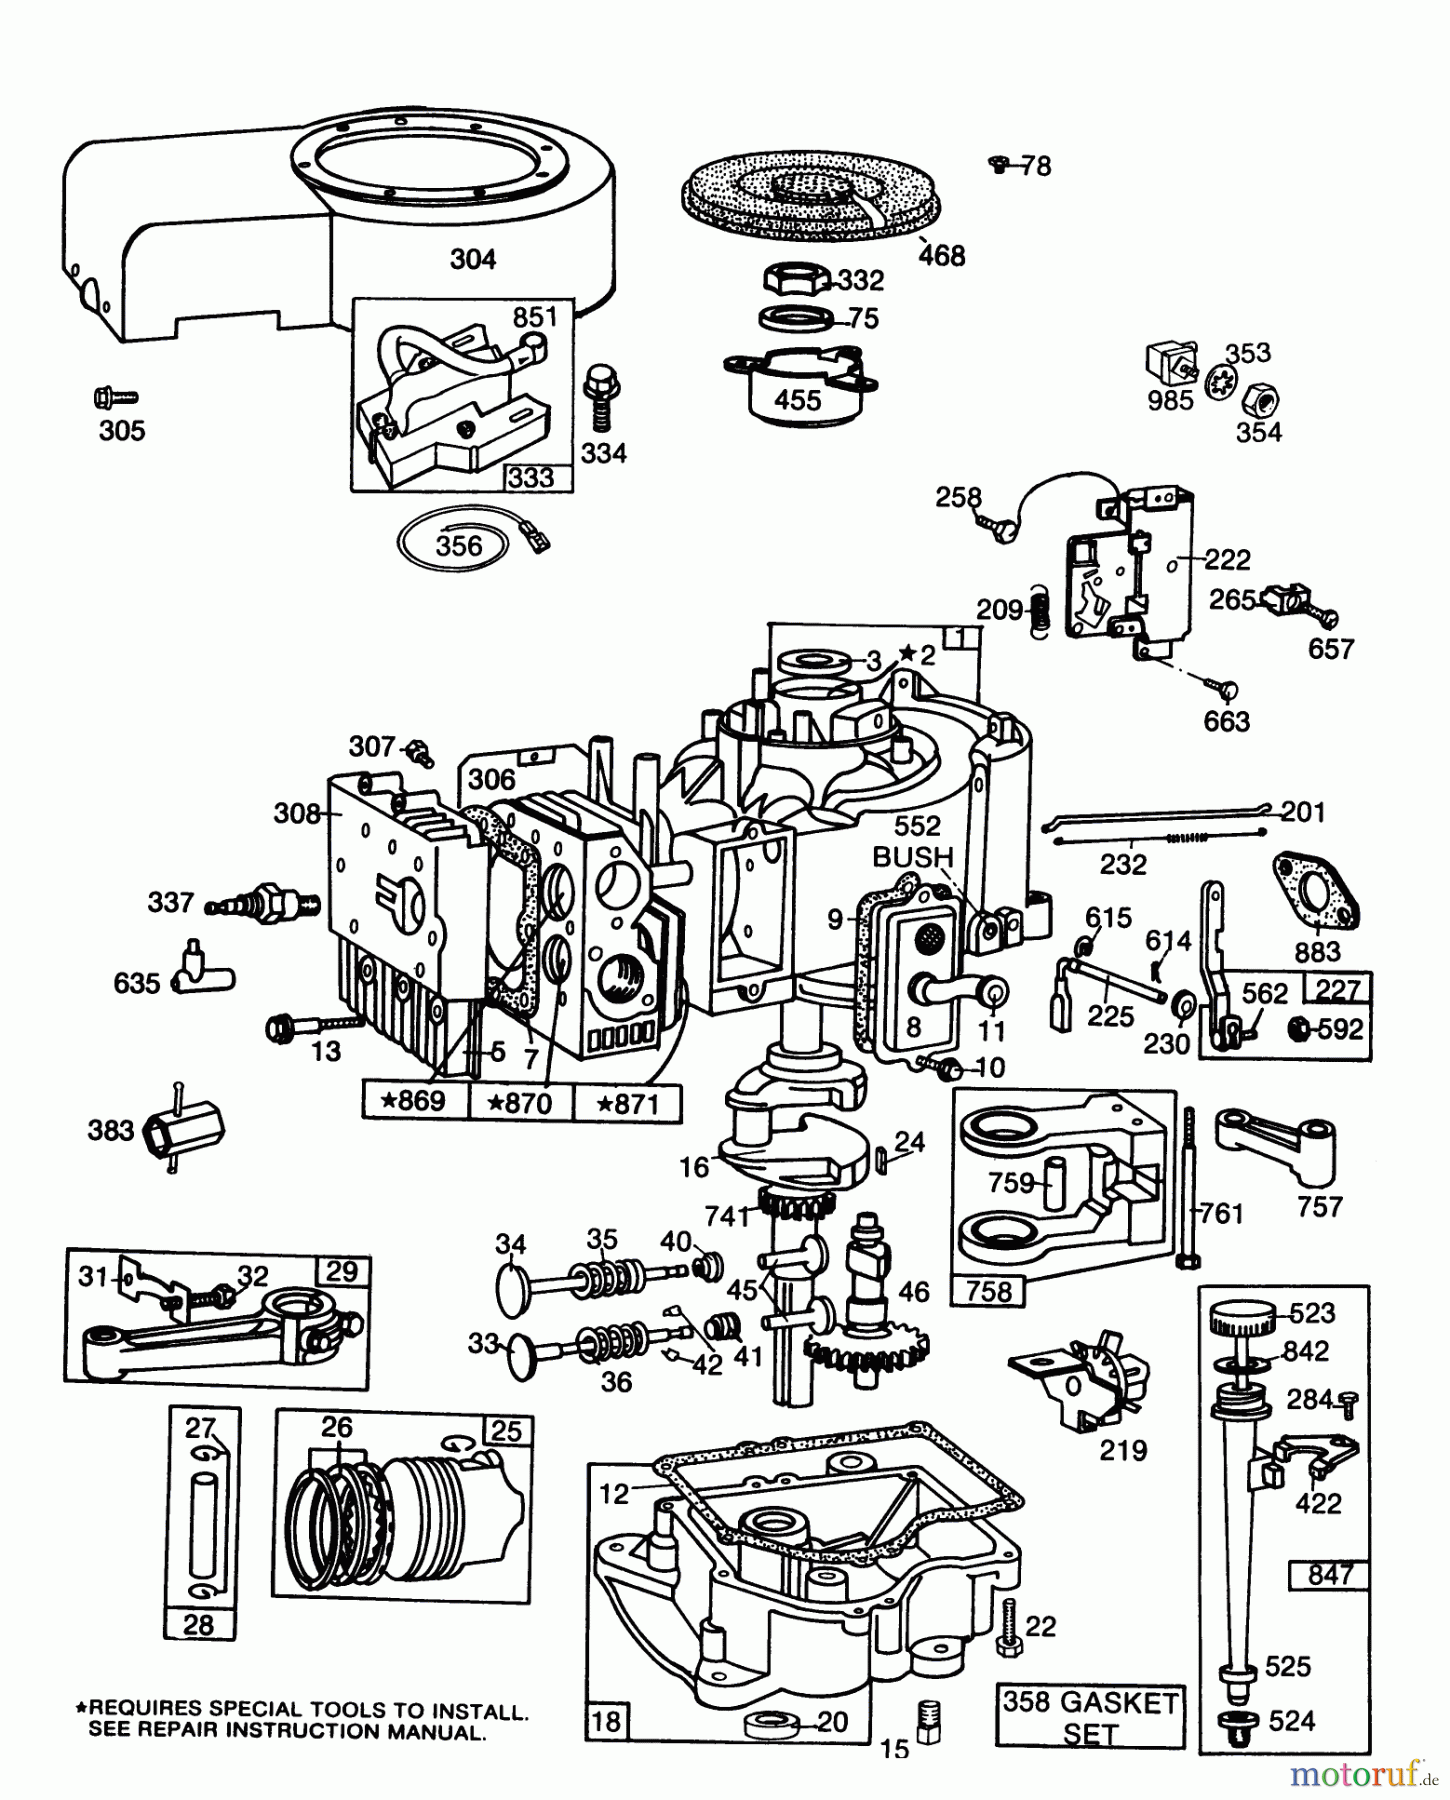  Toro Neu Mowers, Lawn & Garden Tractor Seite 1 57354 (11-44) - Toro 11-44 Pro Lawn Tractor, 1986 (6000001-6999999) ENGINE BRIGGS & STRATTON MODEL 253707-0157-01 #1